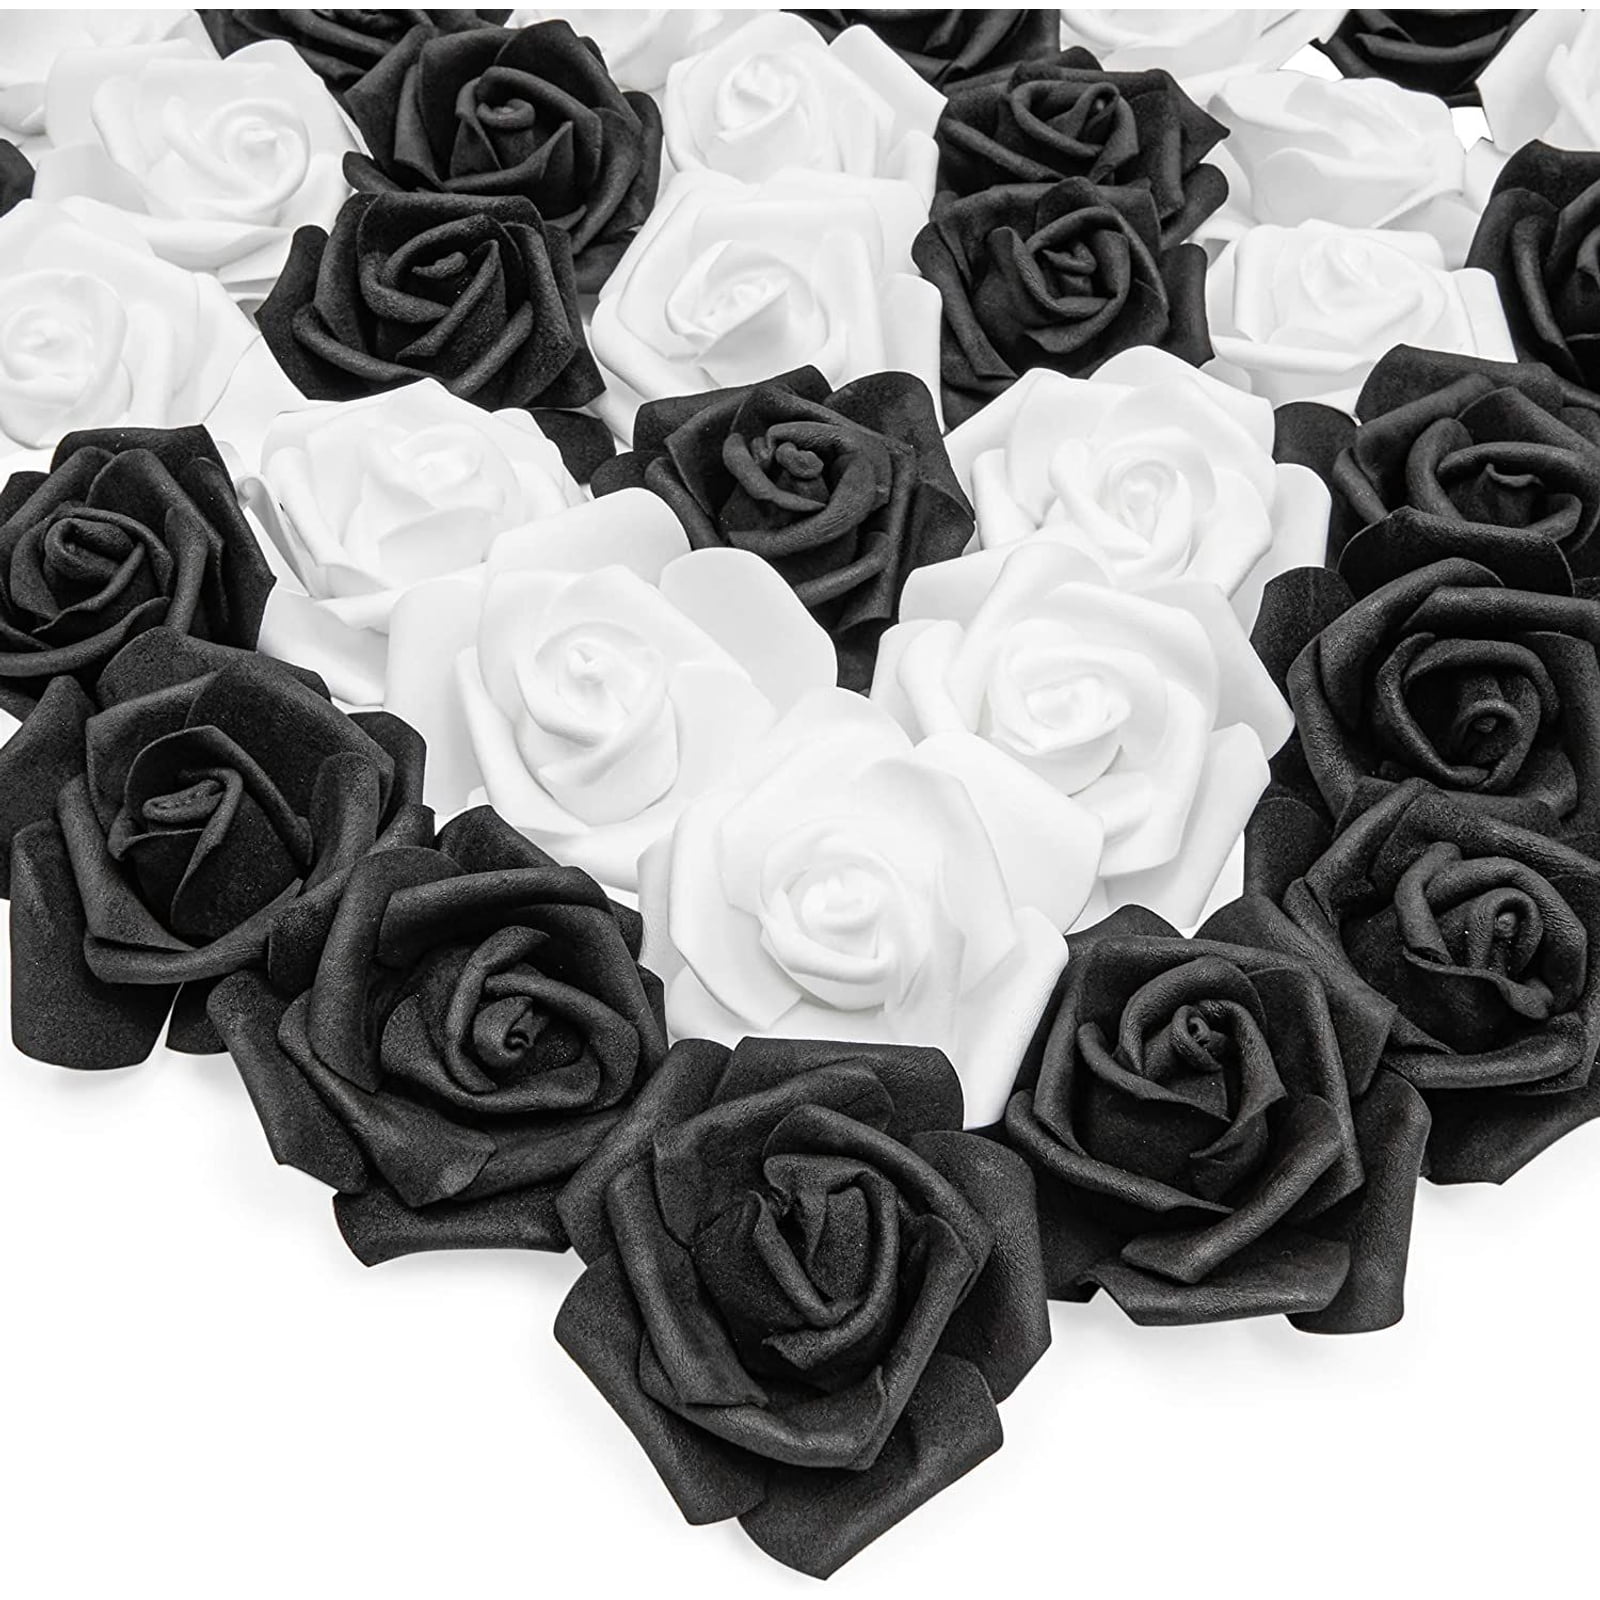 100 X Mini Artificial Rose Flower Heads Foam Wedding Party Decor Wholesale 3 cm